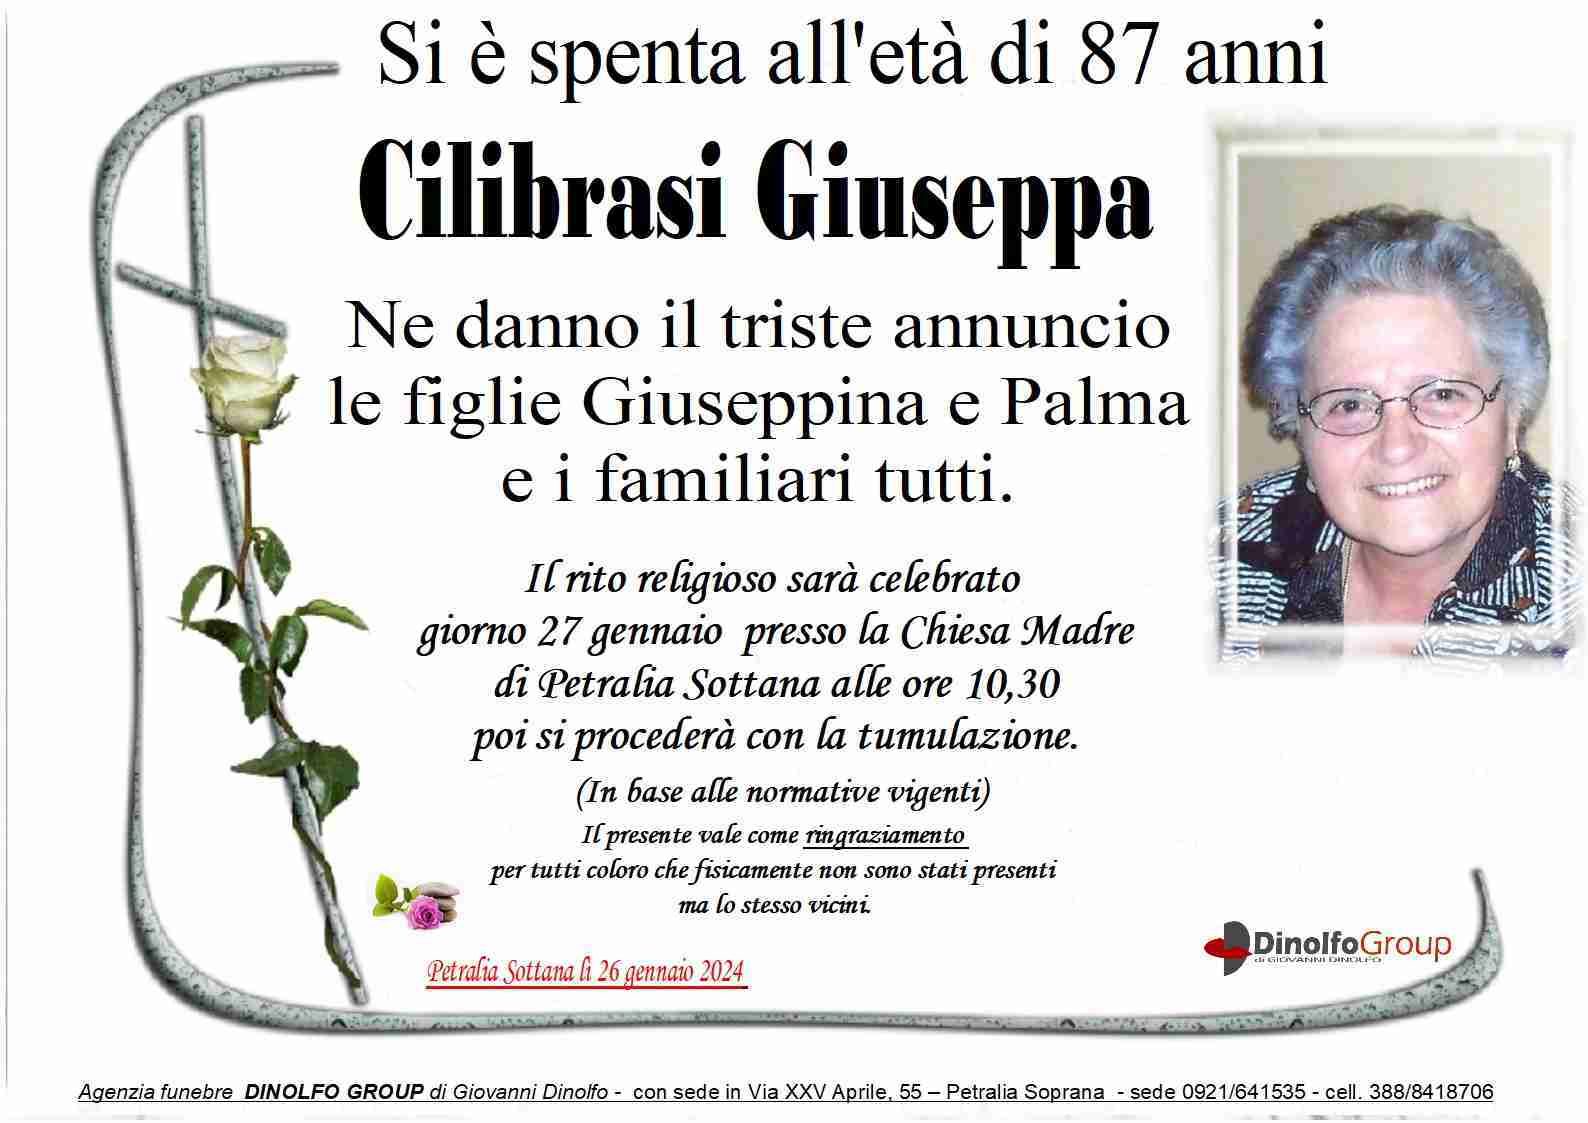 Giuseppa Cilibrasi